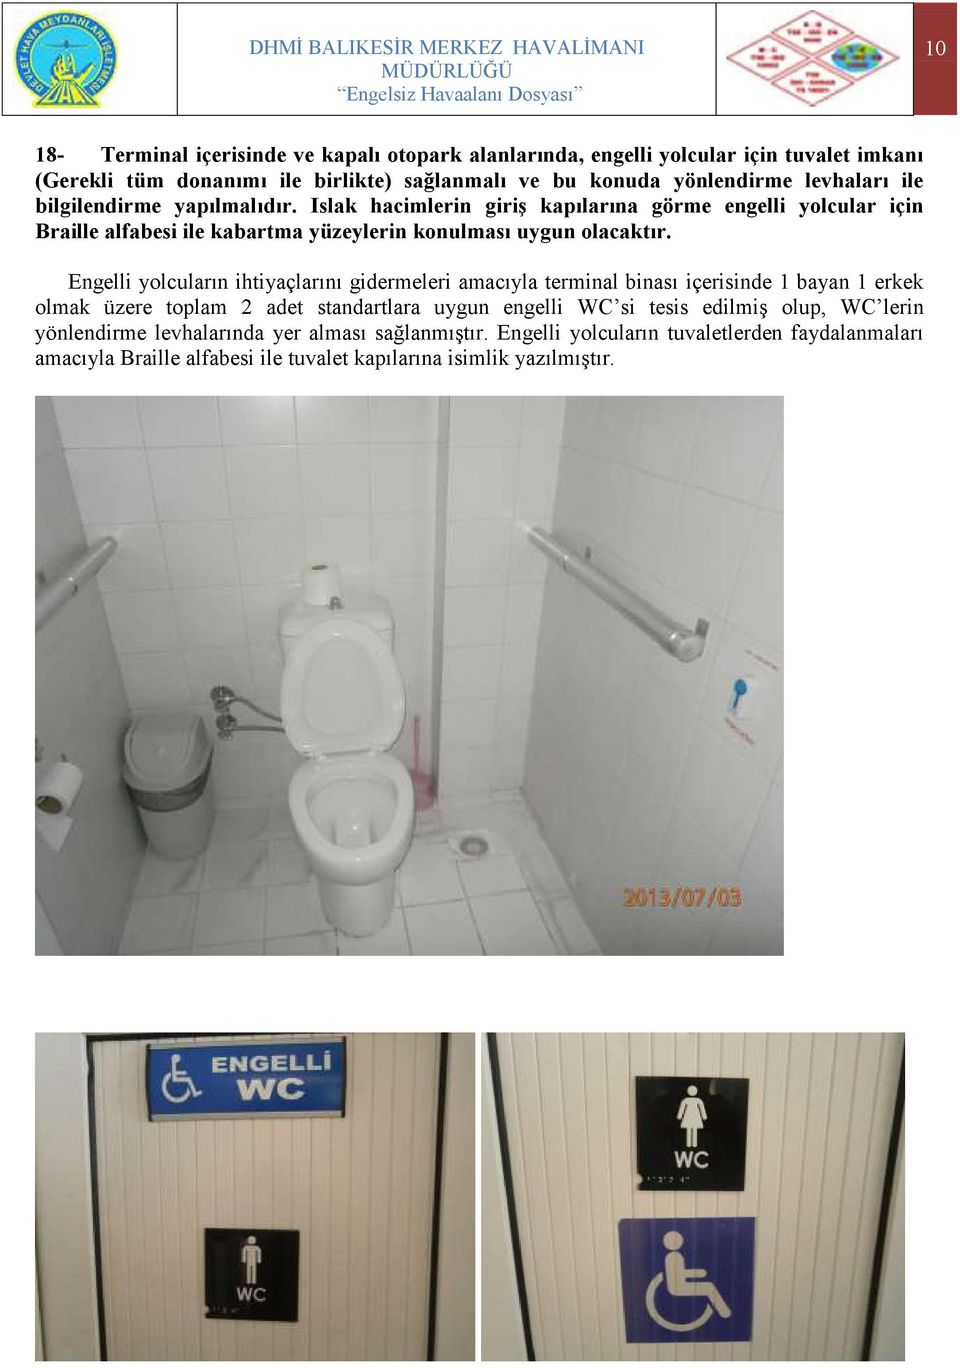 Engelli yolcuların ihtiyaçlarını gidermeleri amacıyla terminal binası içerisinde 1 bayan 1 erkek olmak üzere toplam 2 adet standartlara uygun engelli WC si tesis edilmiģ